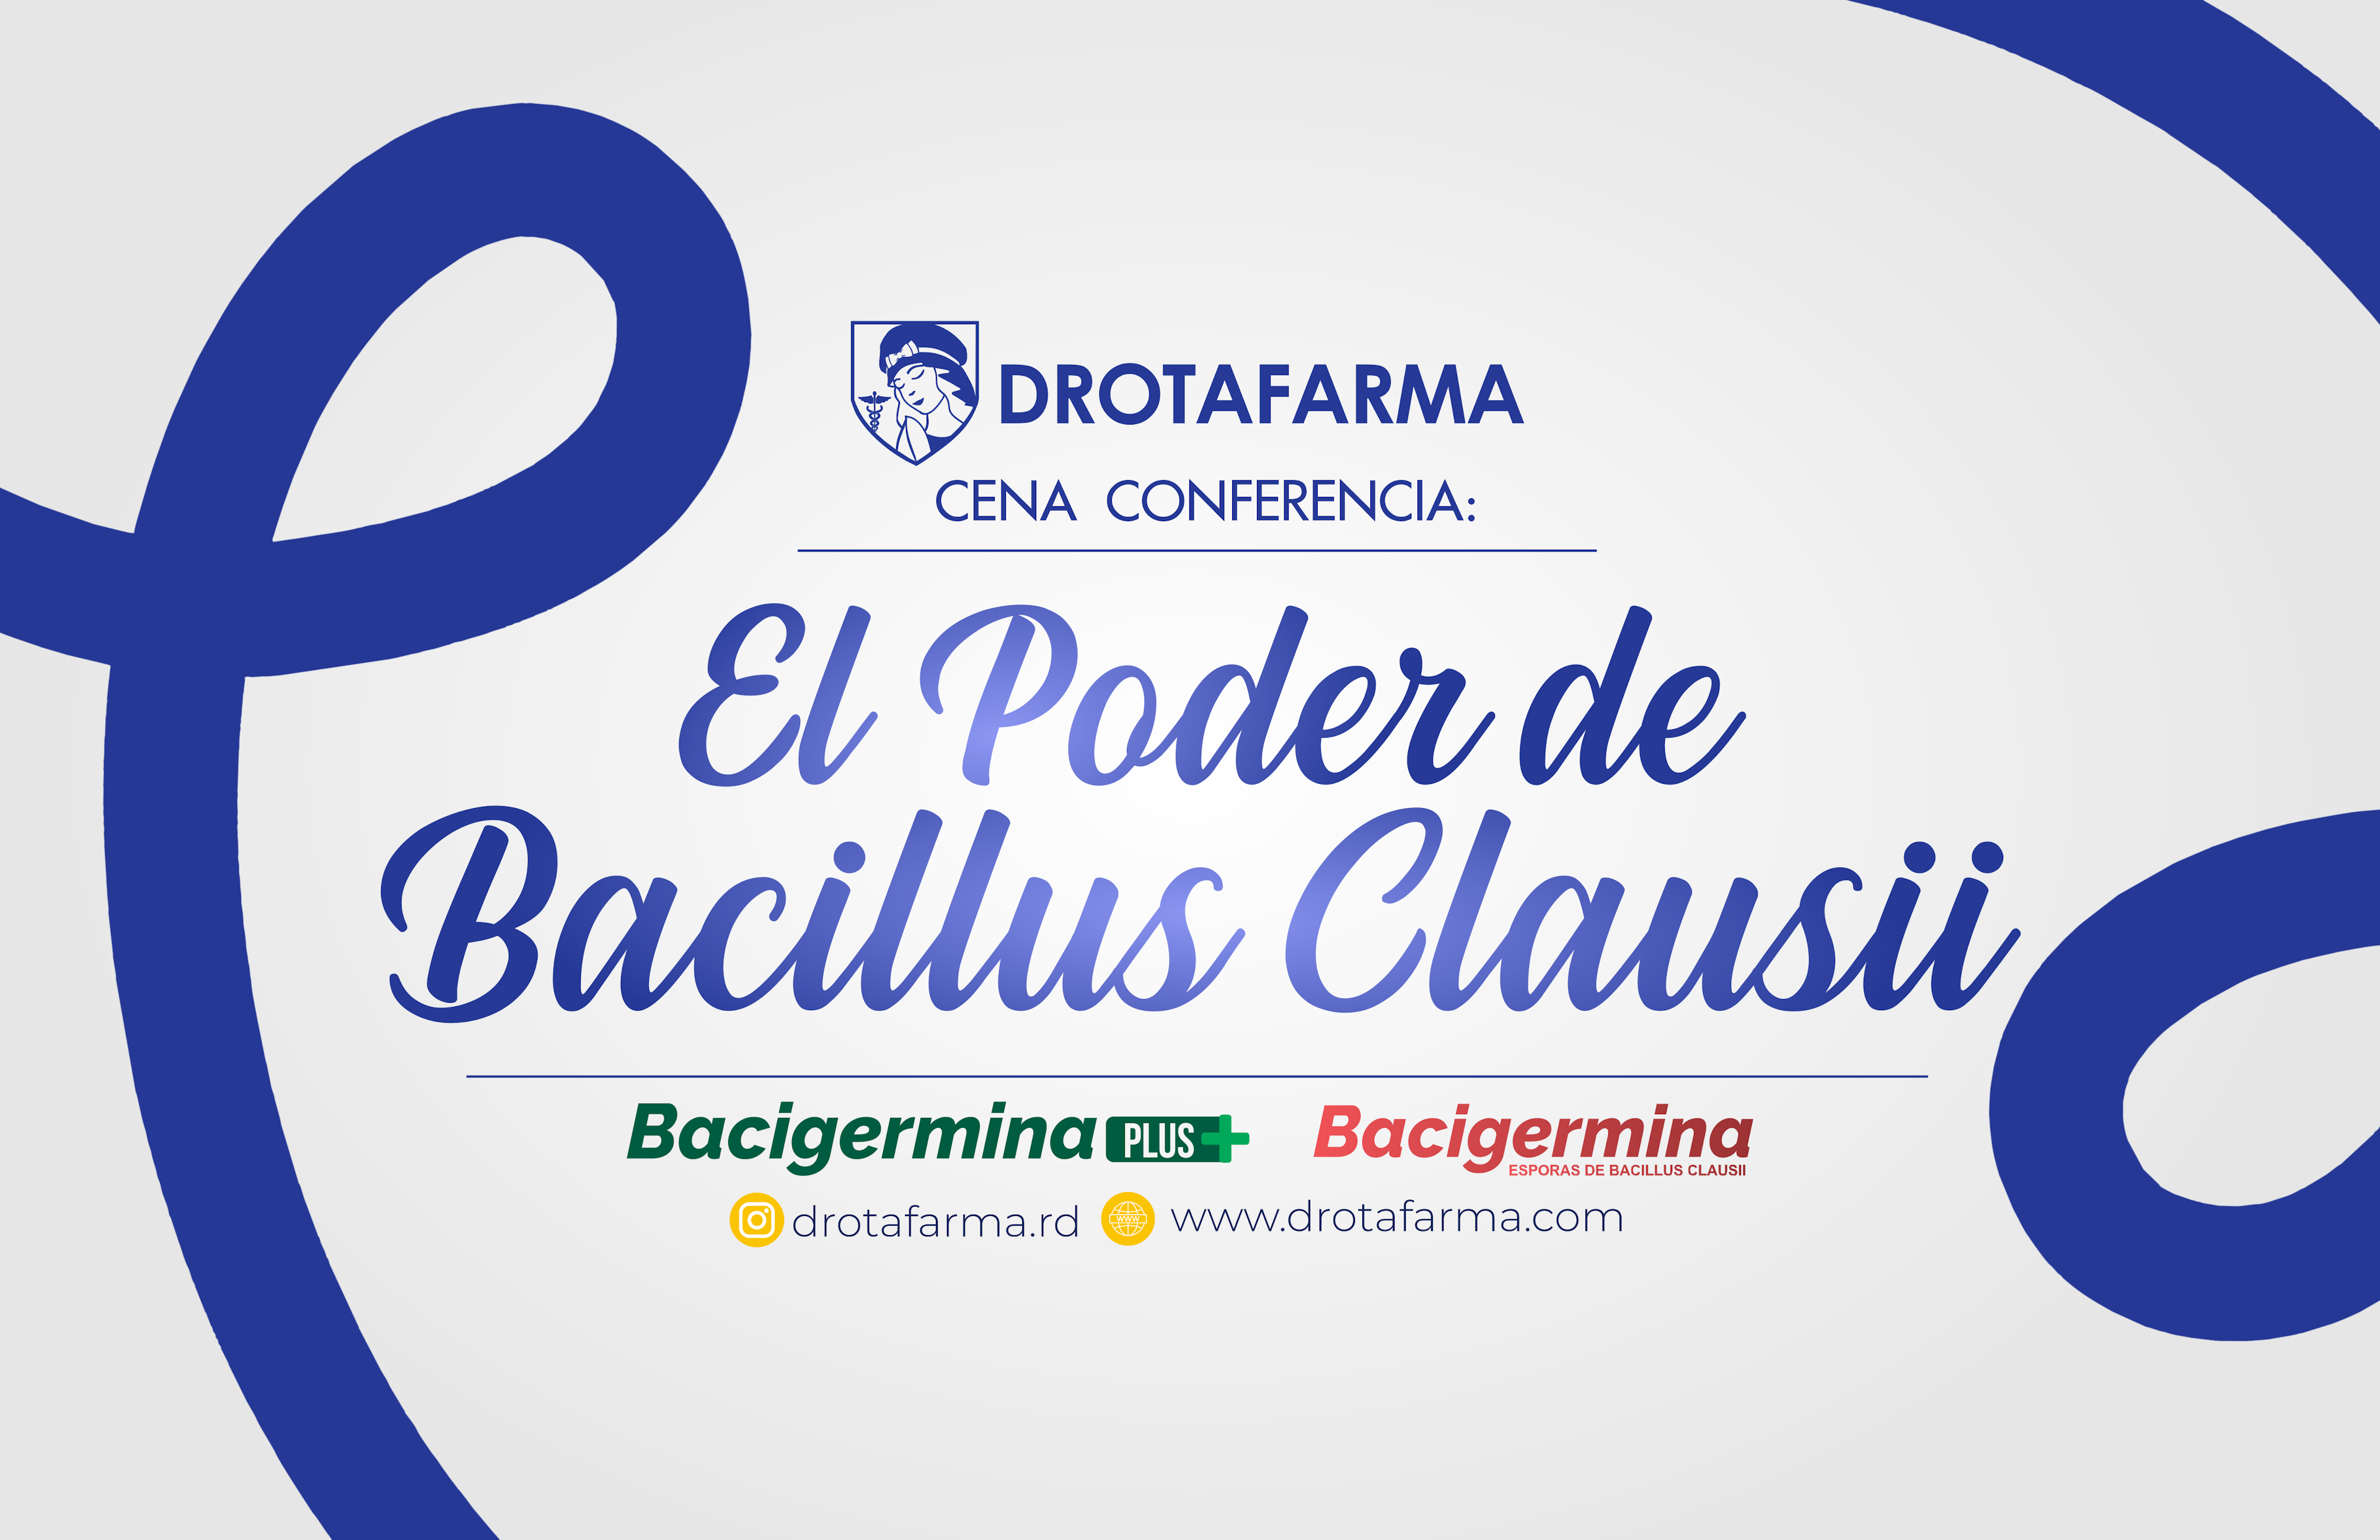 Drotafarma realizó conferencia “El Poder del Bacillus Clausii”